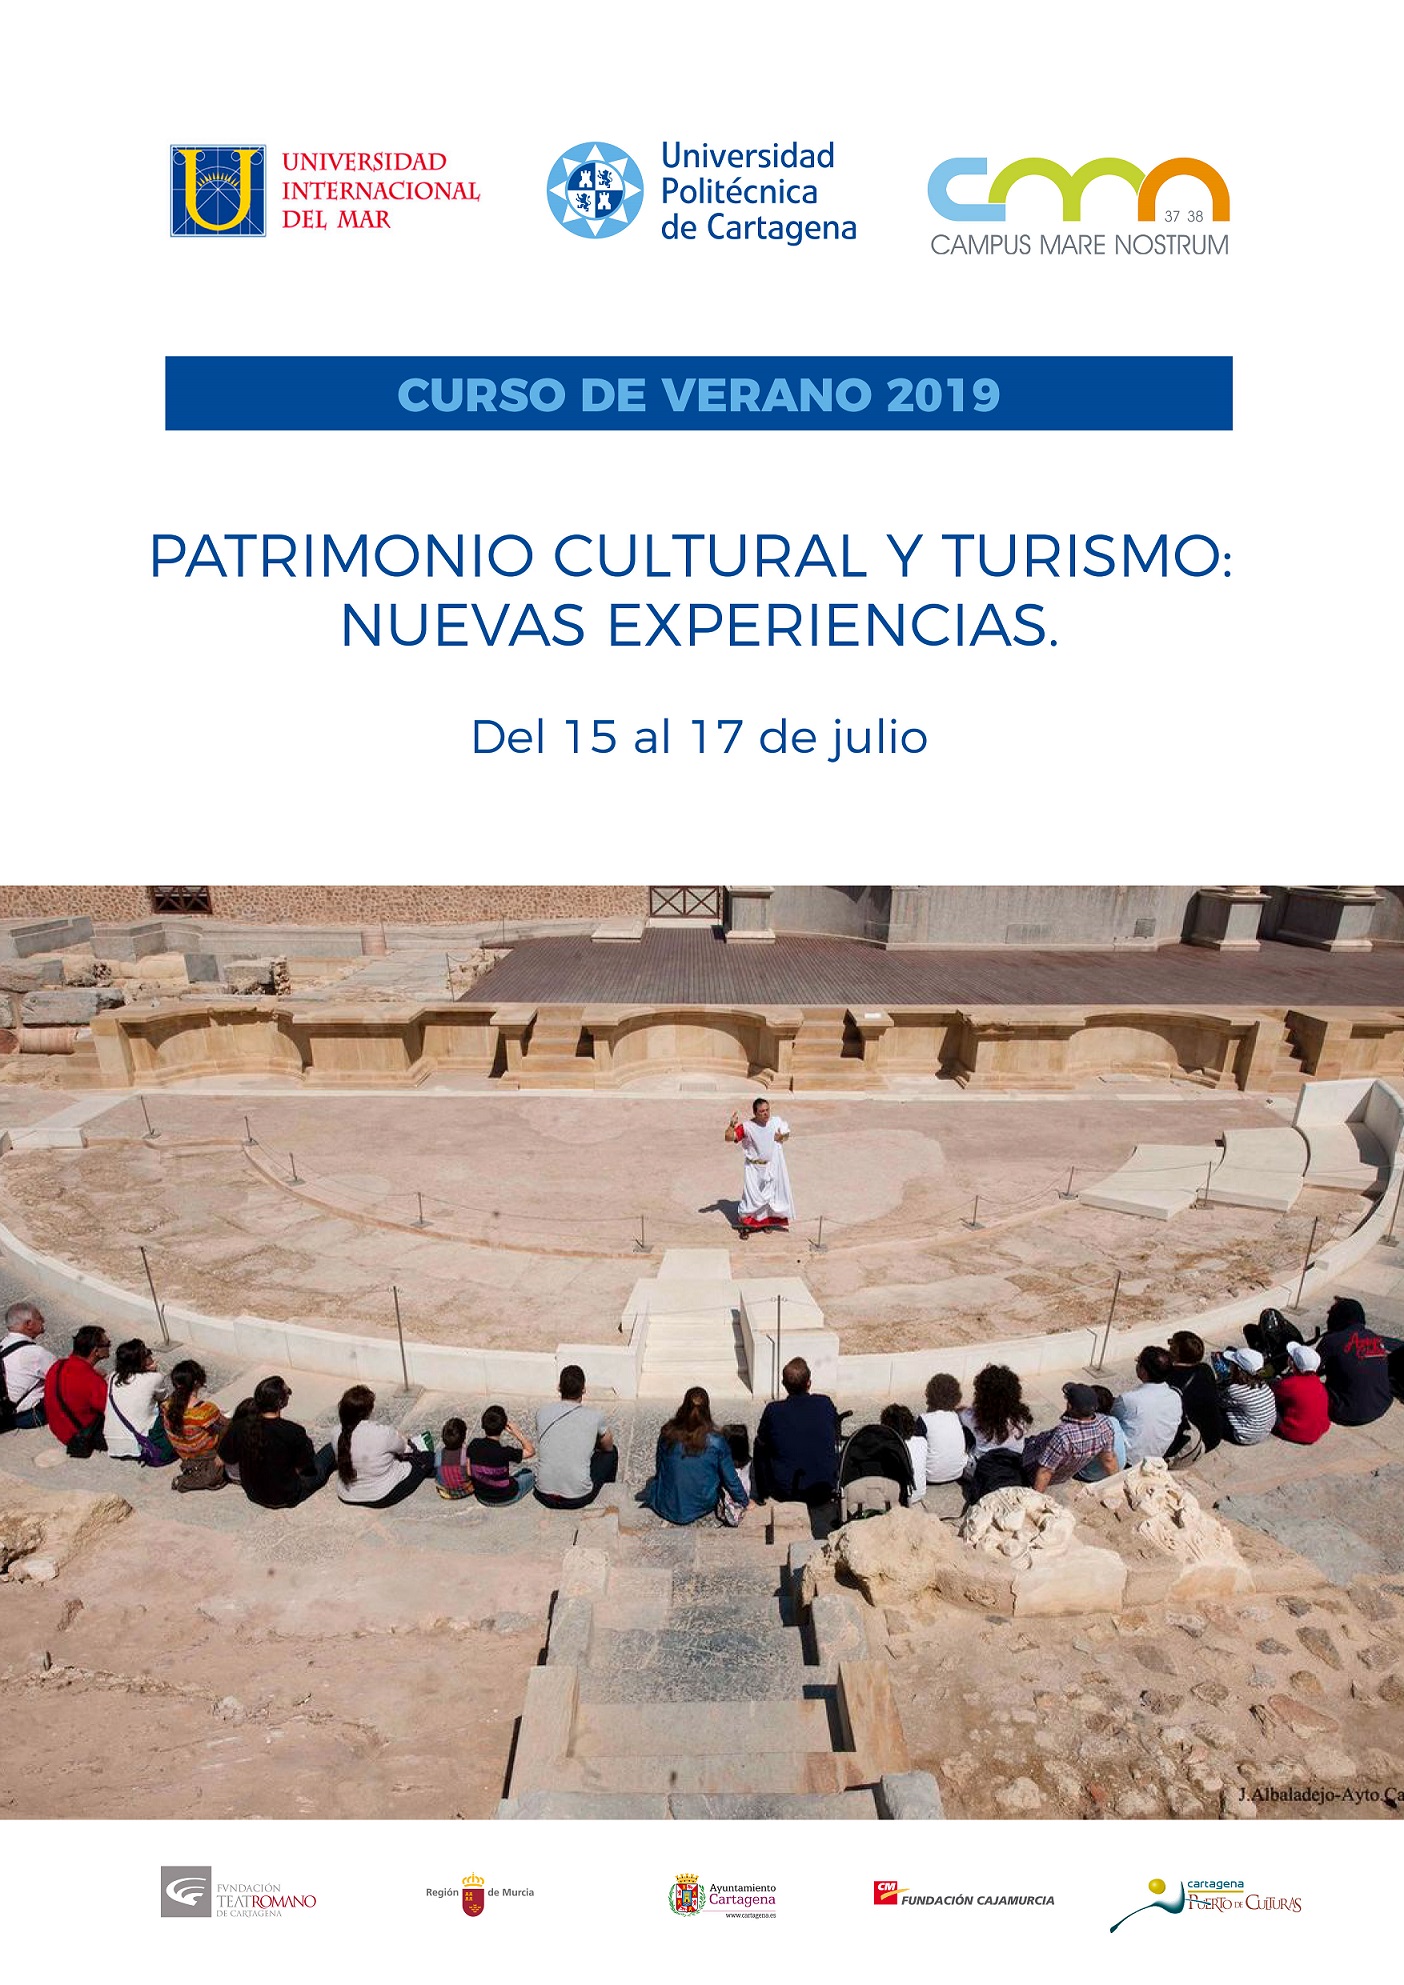 Curso de verano UPCT 2019: Patrimonio Cultural Turismo: Nuevas Experiencias